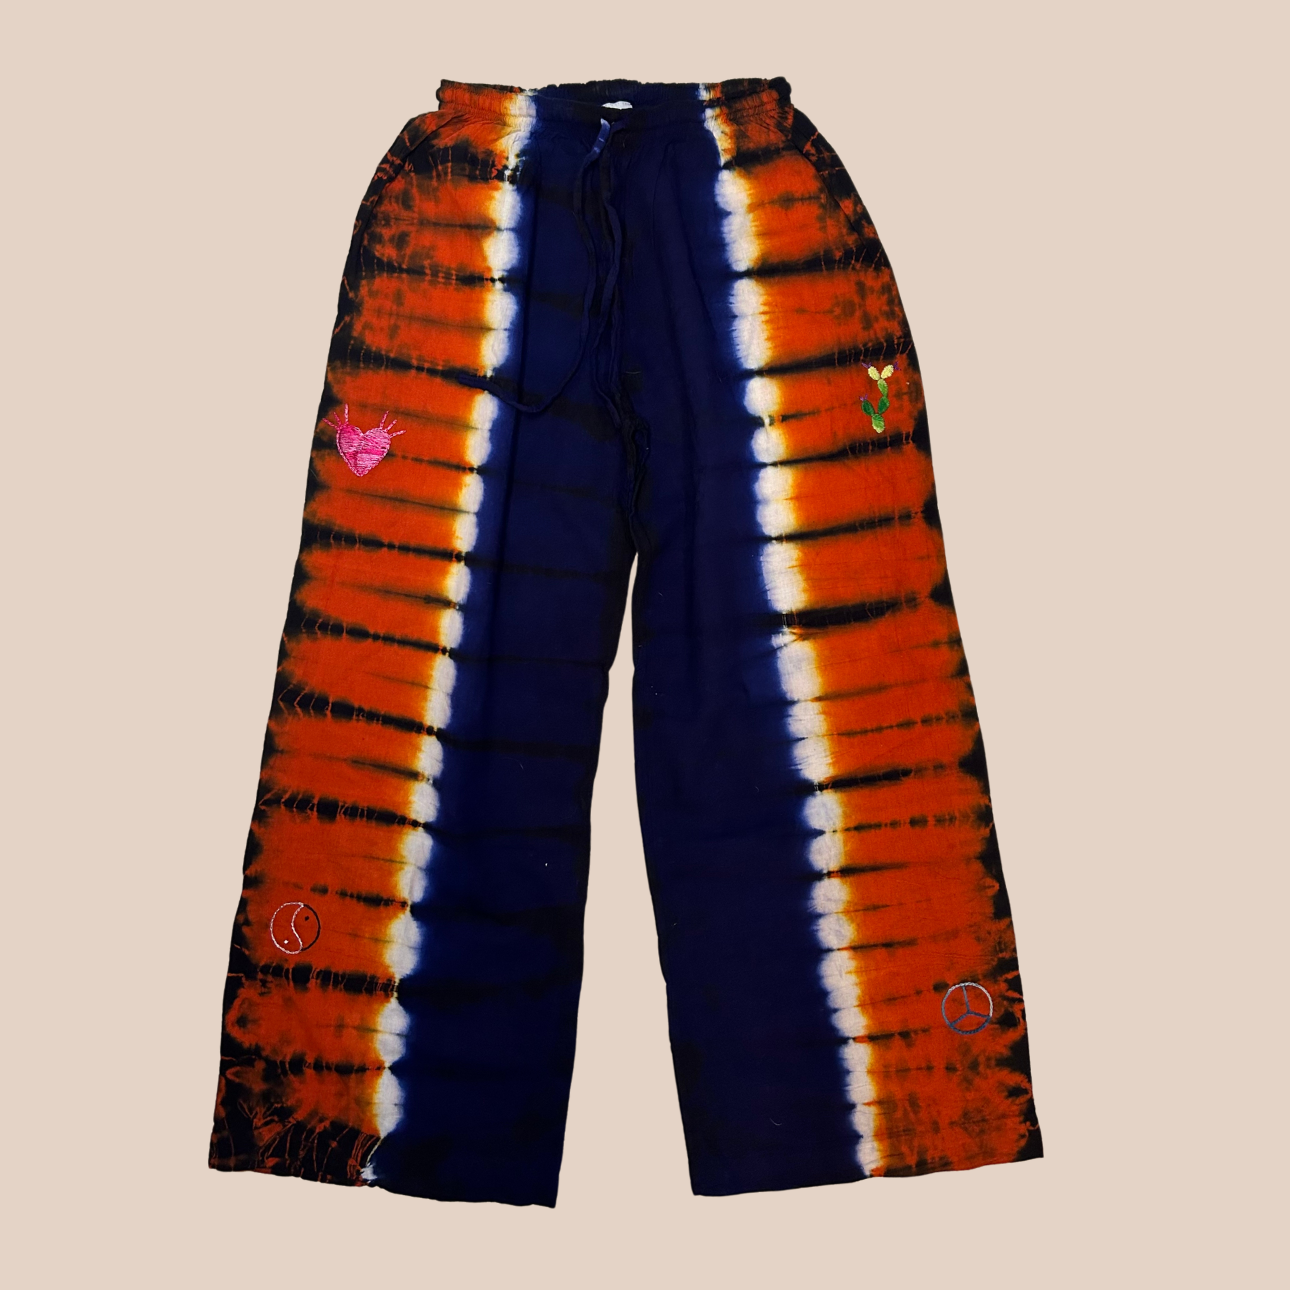 Image du pantalon large tie & dye orange et bleu, un pantalon large aux nuances vibrantes de orange et de bleu, un véritable tourbillon de couleur et de style